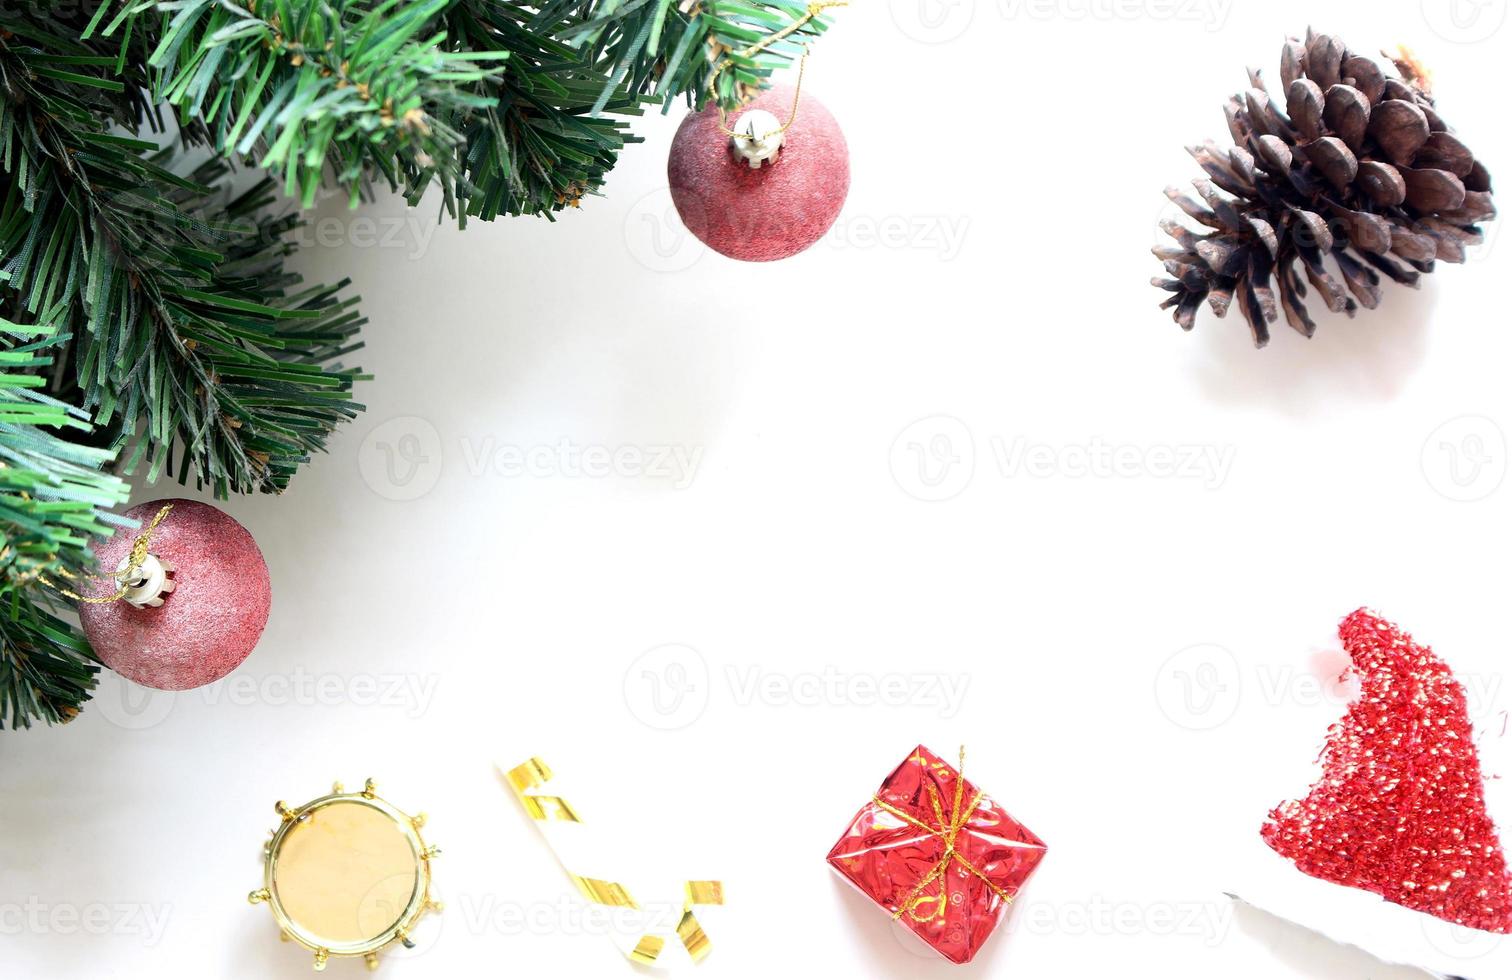 jul träd med dekorationer boll och låda gåva på vit bakgrund foto